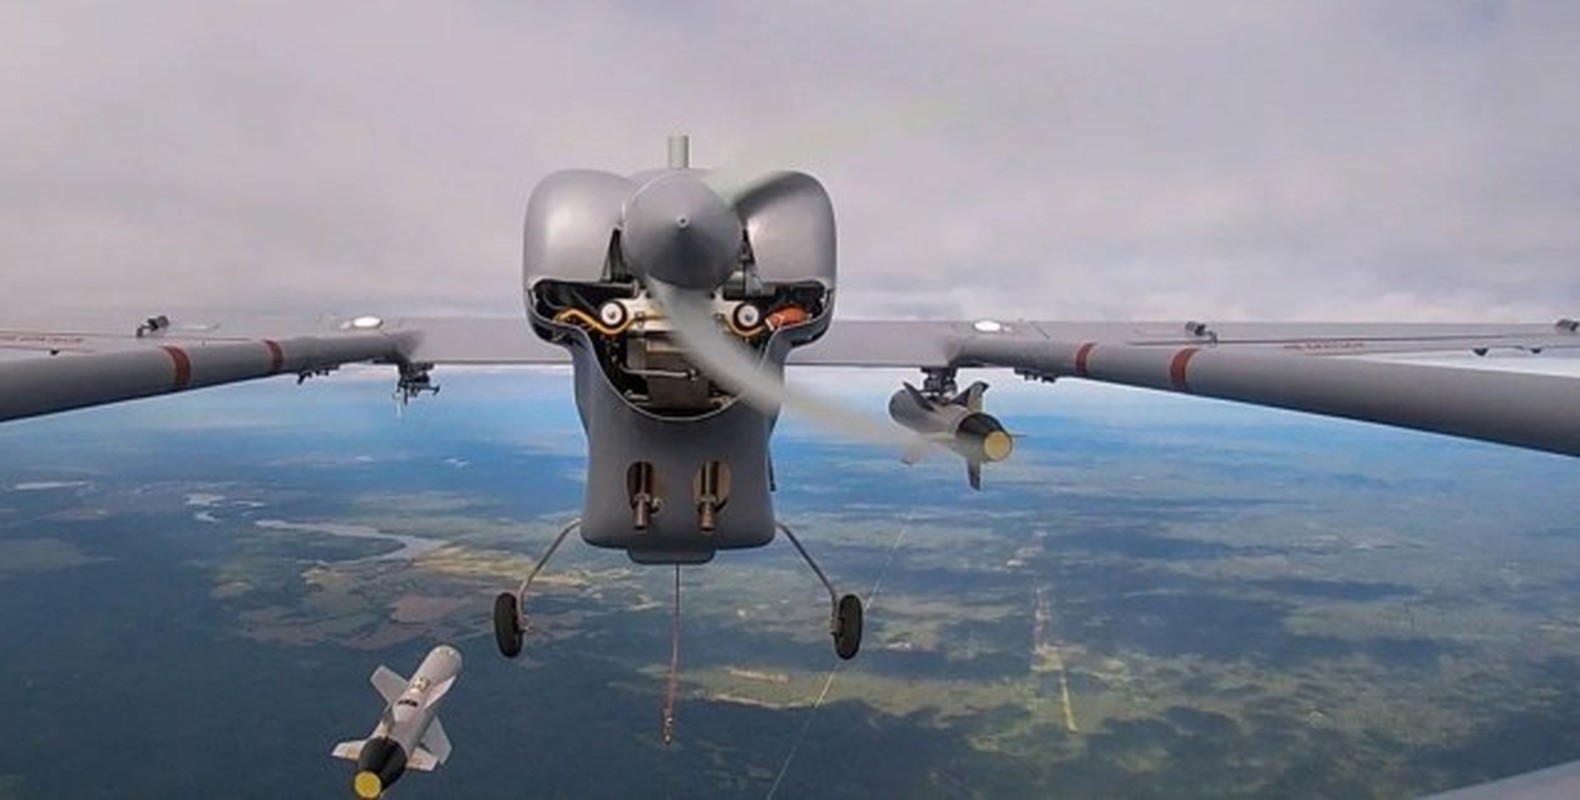 He lo nguon goc UAV “dat nhat” cua Nga bi Ukraine ban roi-Hinh-6